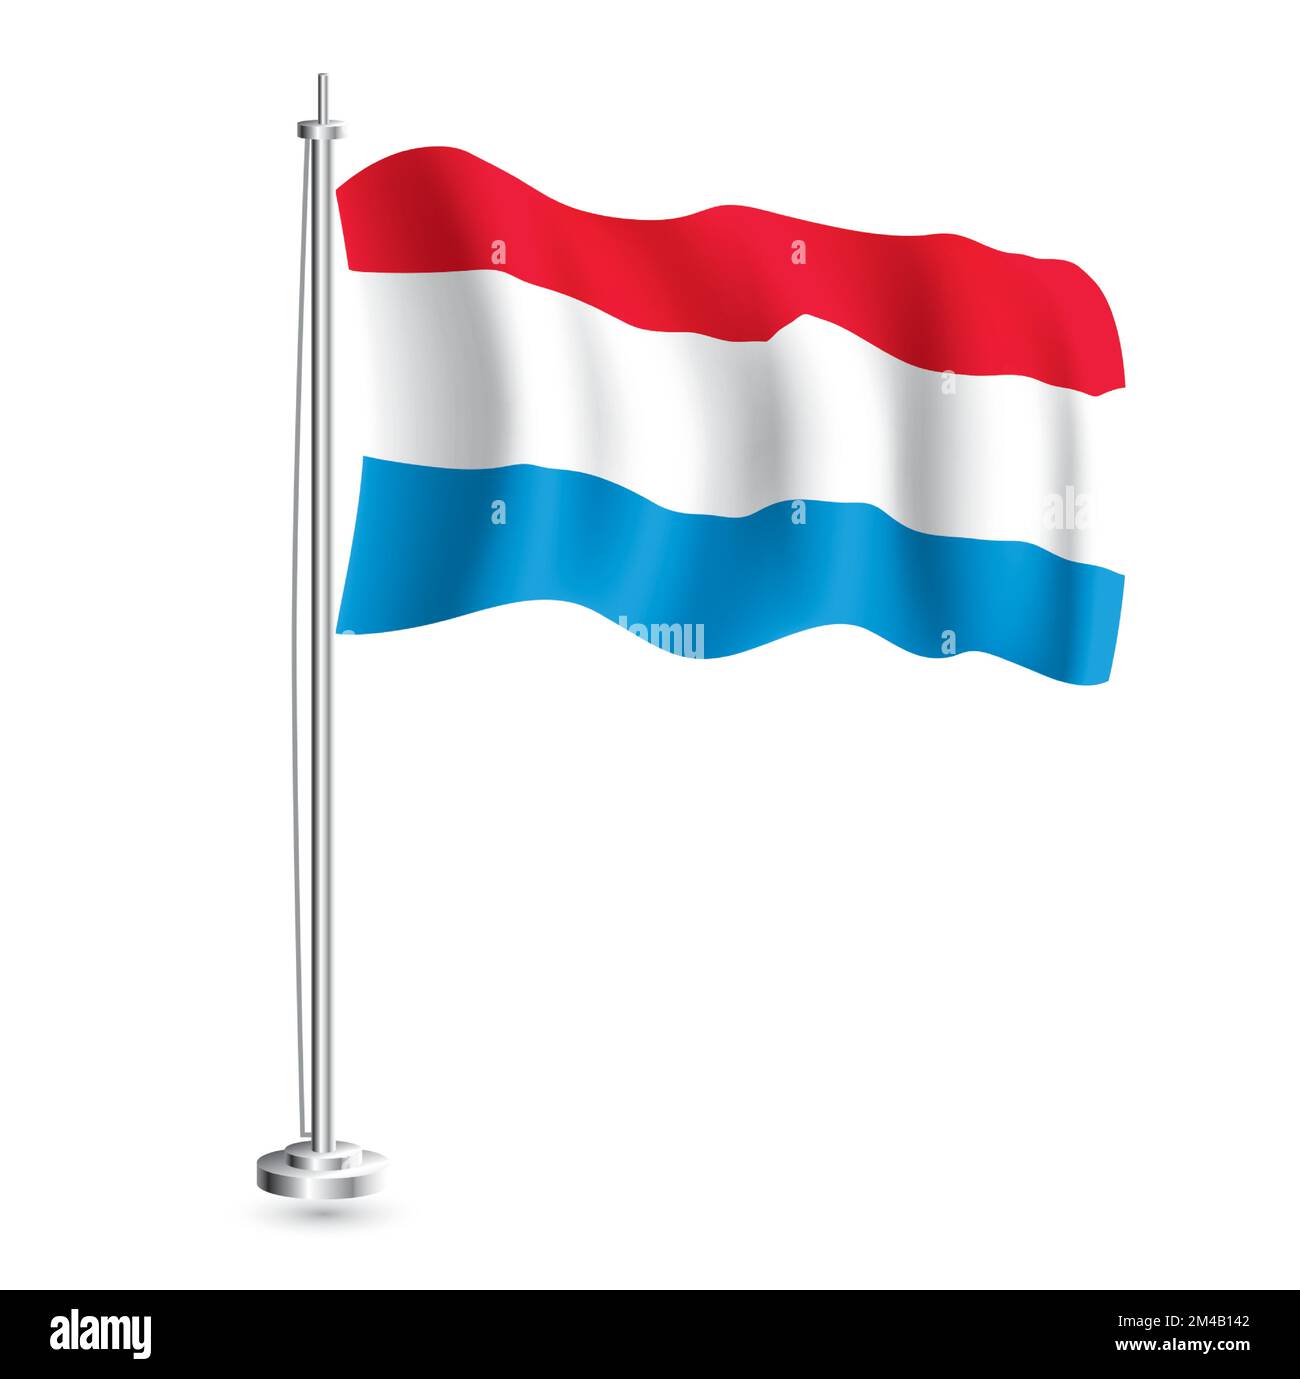 Luxemburgische Flagge. Isolierte realistische Wellenflagge des Landes Luxemburg auf der Flaggenpole. Vektordarstellung. Stock Vektor